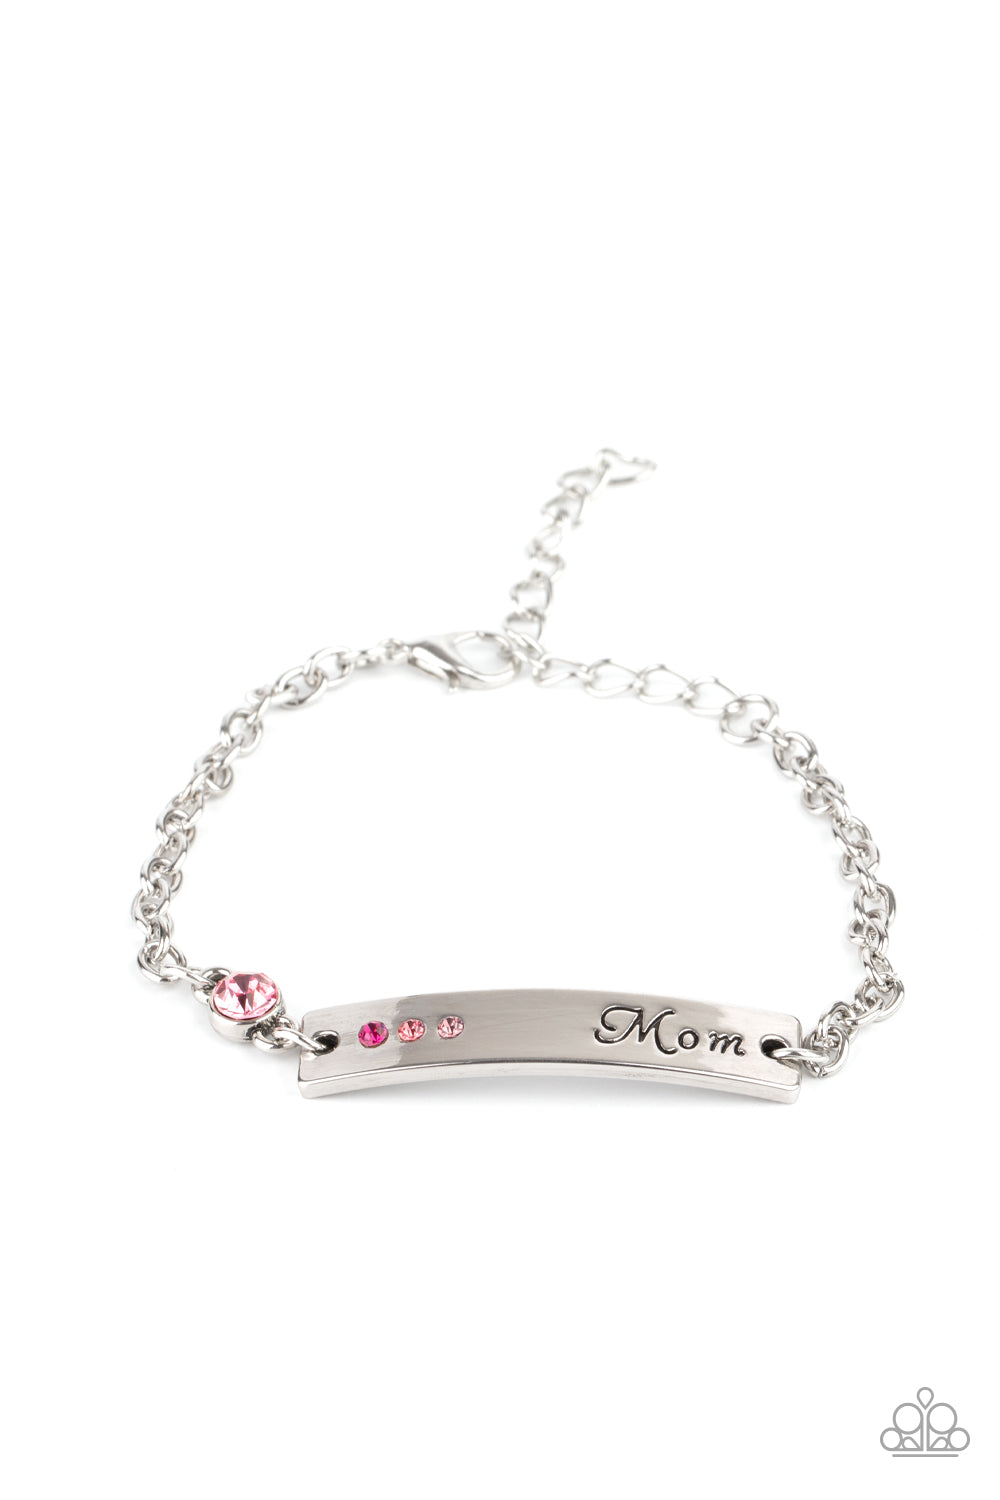 Mom Always Knows - Pink Bracelet - Princess Glam Shop